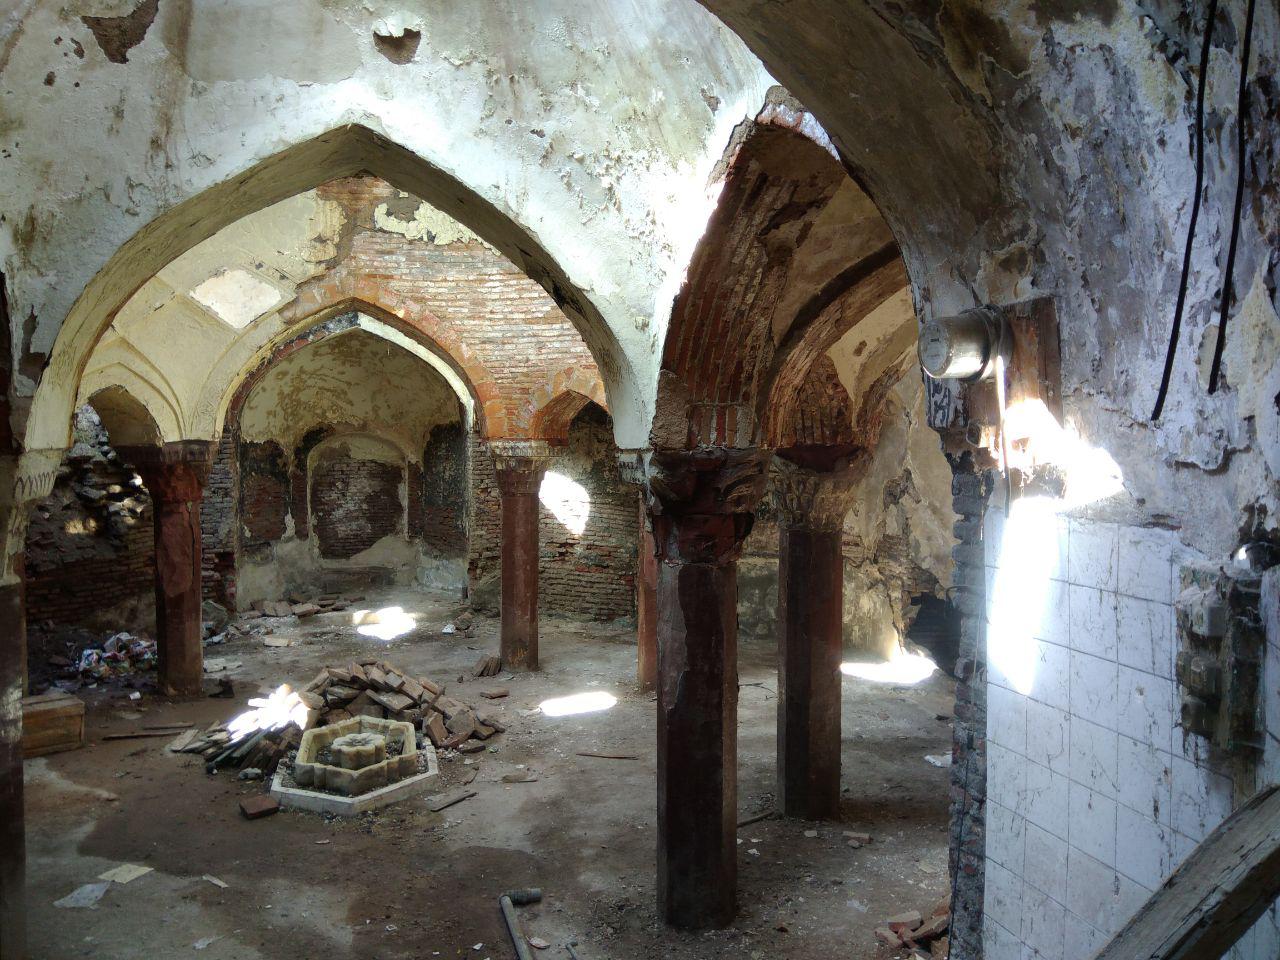 حمام تاریخی محمد بیک خوی بعد از ۲۰ سال احیاء و بازسازی می شود